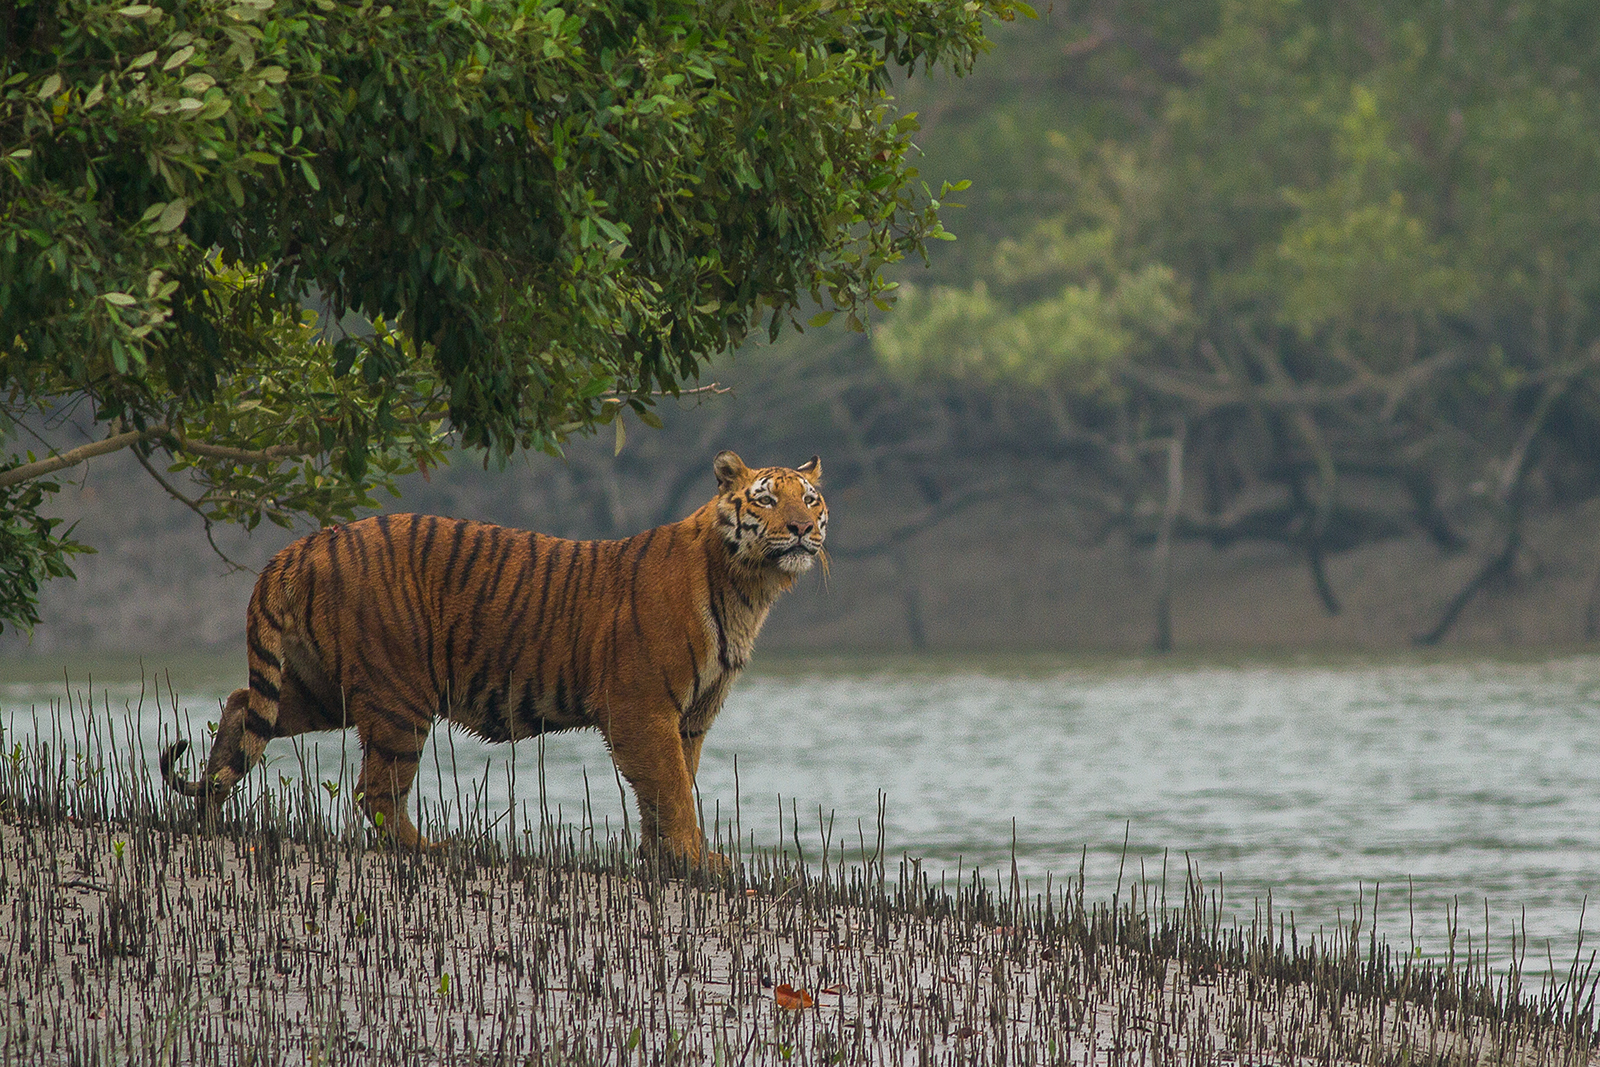 The Sundarbans, Bangladesh